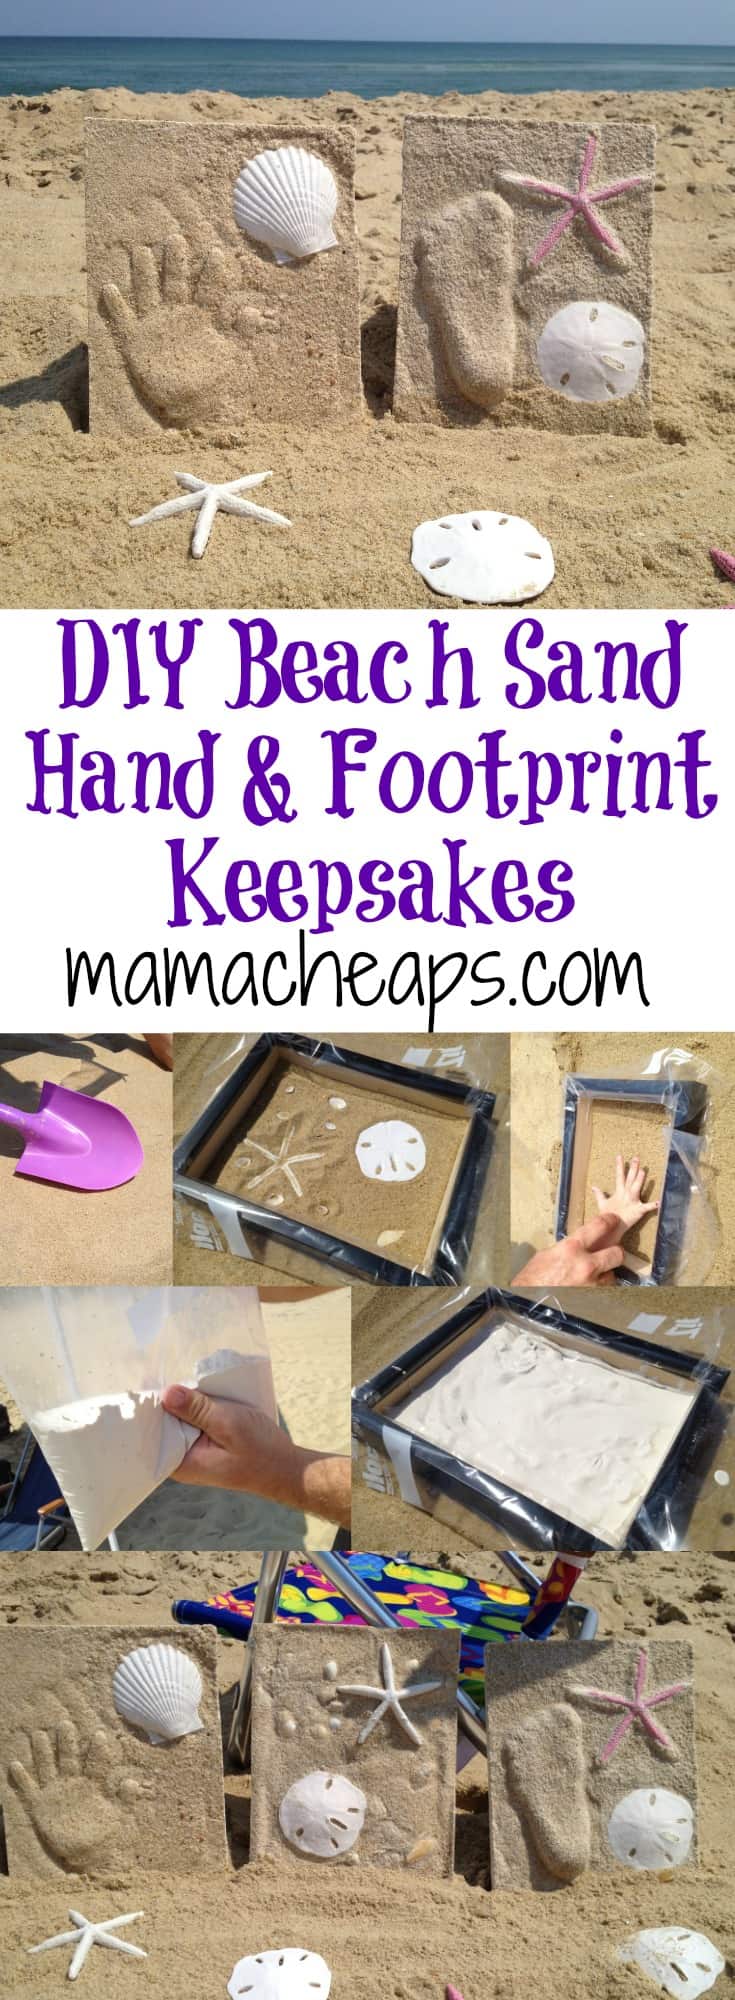 DIY Beach Sand Hand and Footprint Keepsakes